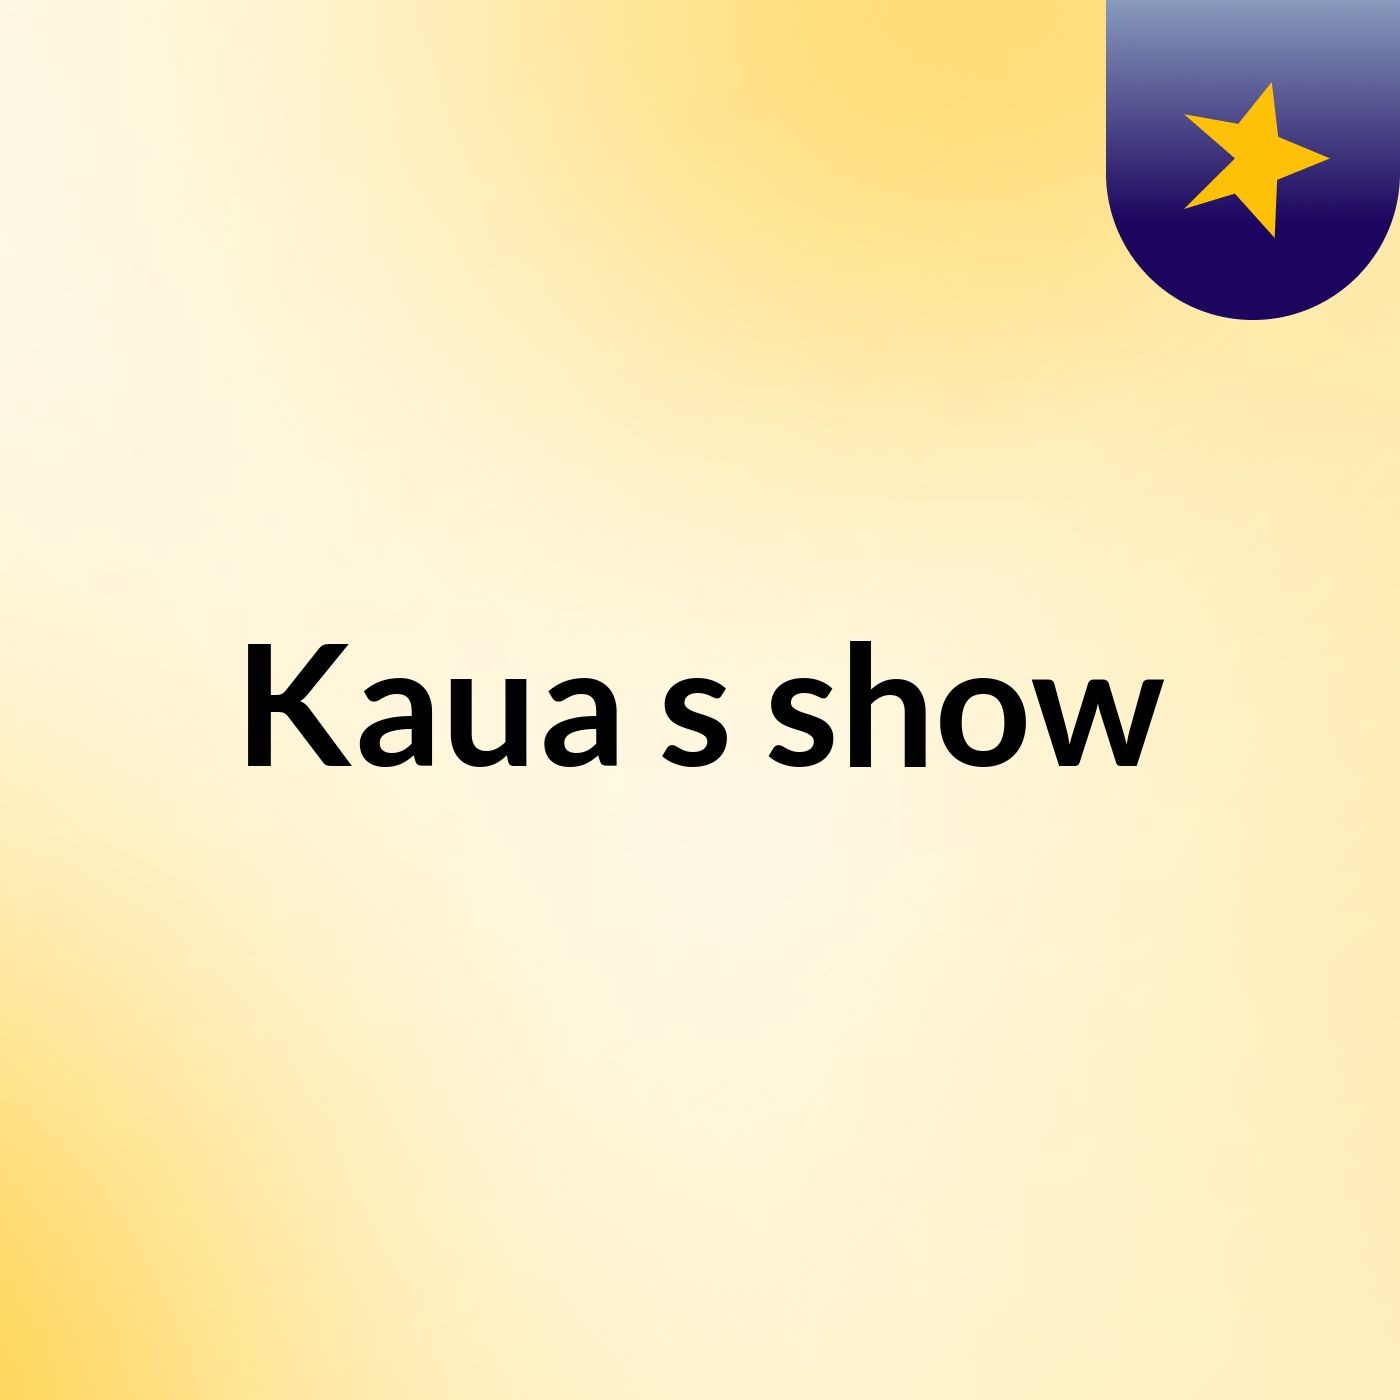 Kaua's show